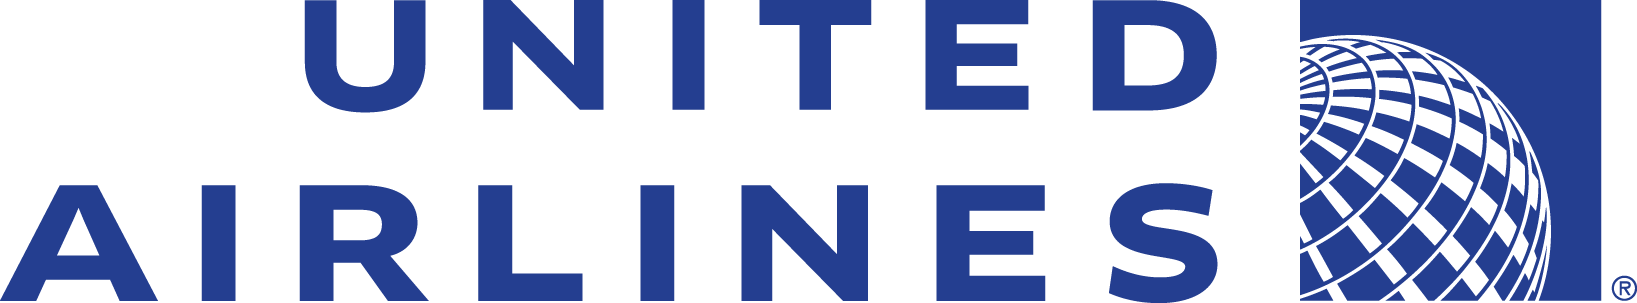 United Airlines Logo - United airlines logo png 2 PNG Image